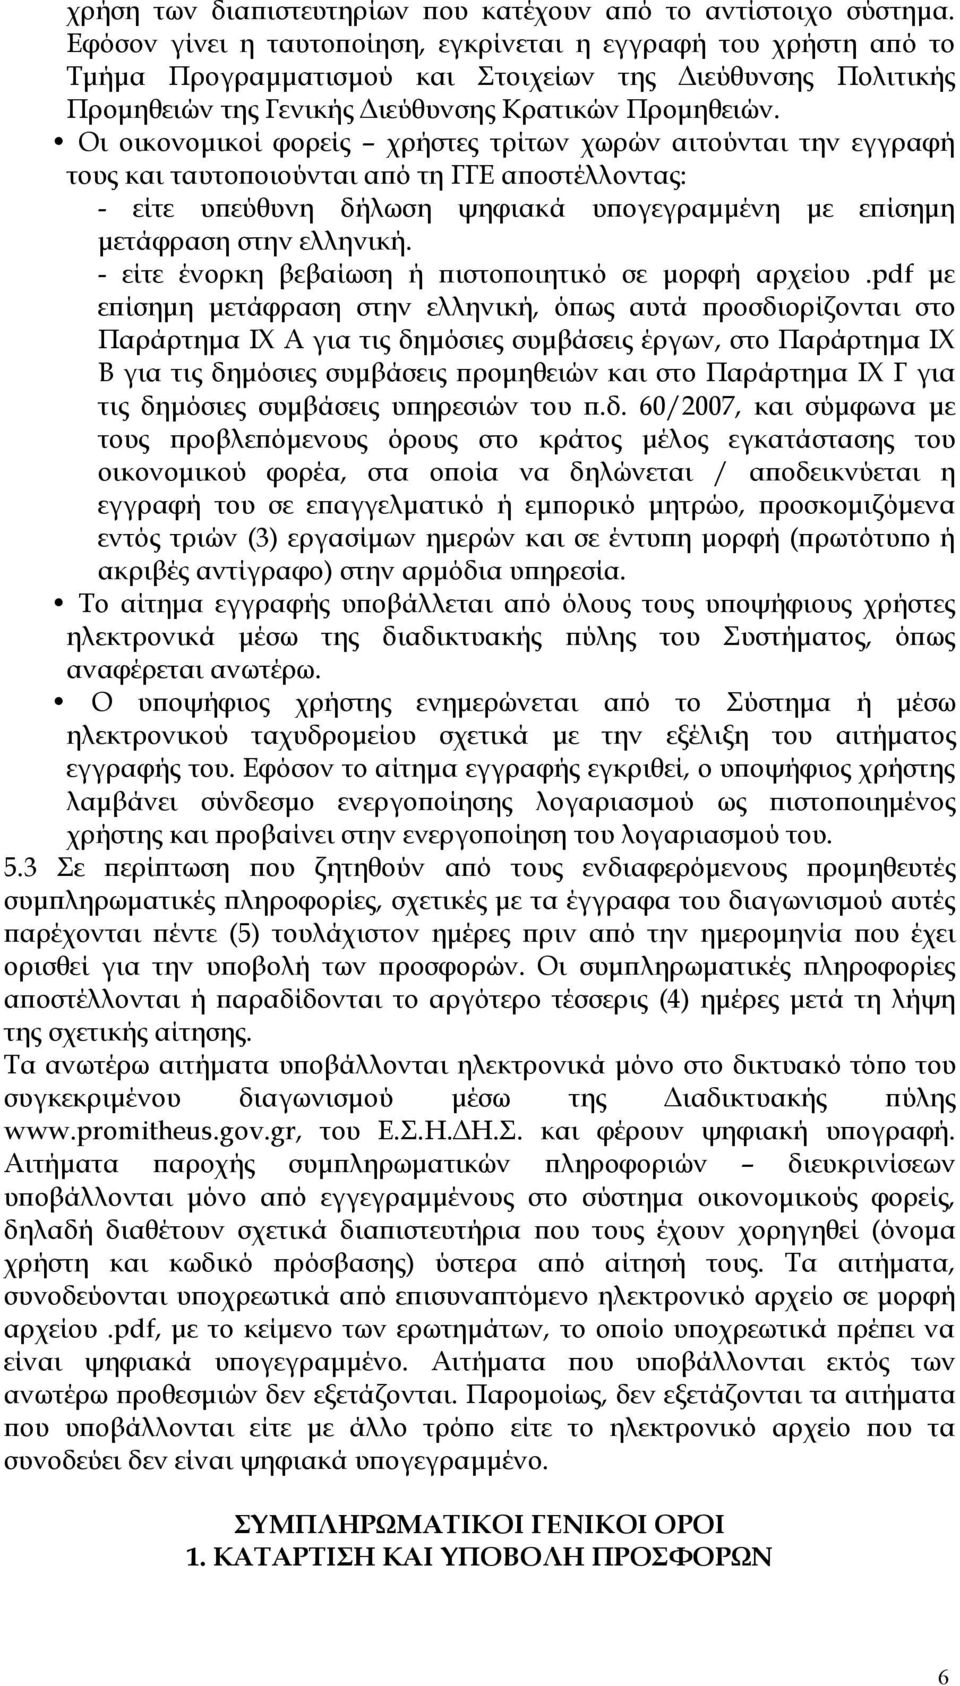 Οι οικονομικοί φορείς χρήστες τρίτων χωρών αιτούνται την εγγραφή τους και ταυτοποιούνται από τη ΓΓΕ αποστέλλοντας: - είτε υπεύθυνη δήλωση ψηφιακά υπογεγραμμένη με επίσημη μετάφραση στην ελληνική.